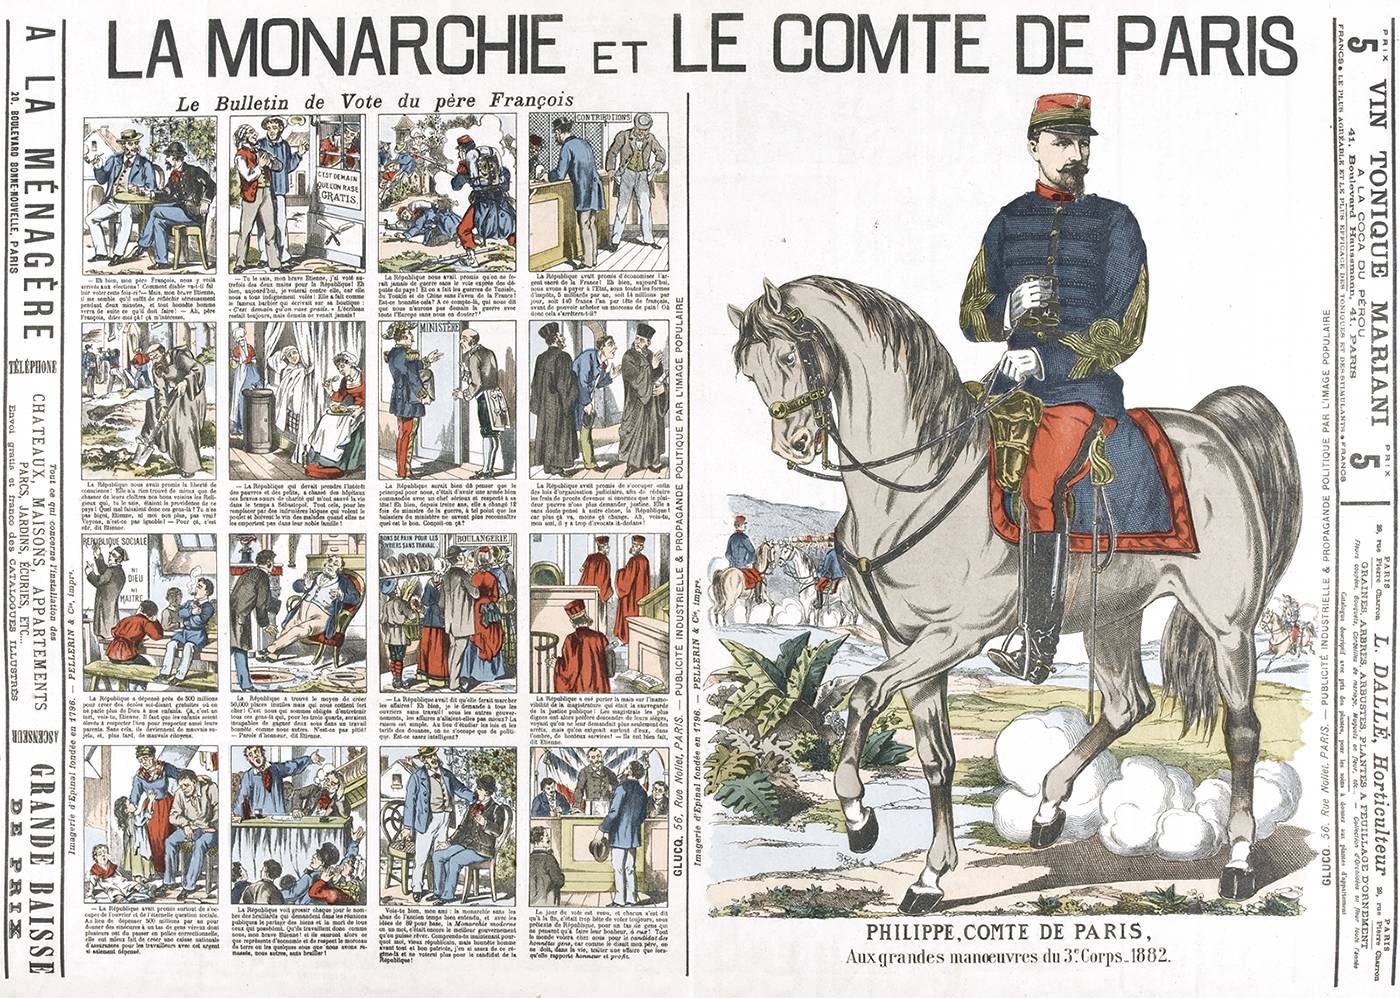 La monarchie et le comte de Paris. Supplément du Figaro daté du 30 mars 1889, p.2.